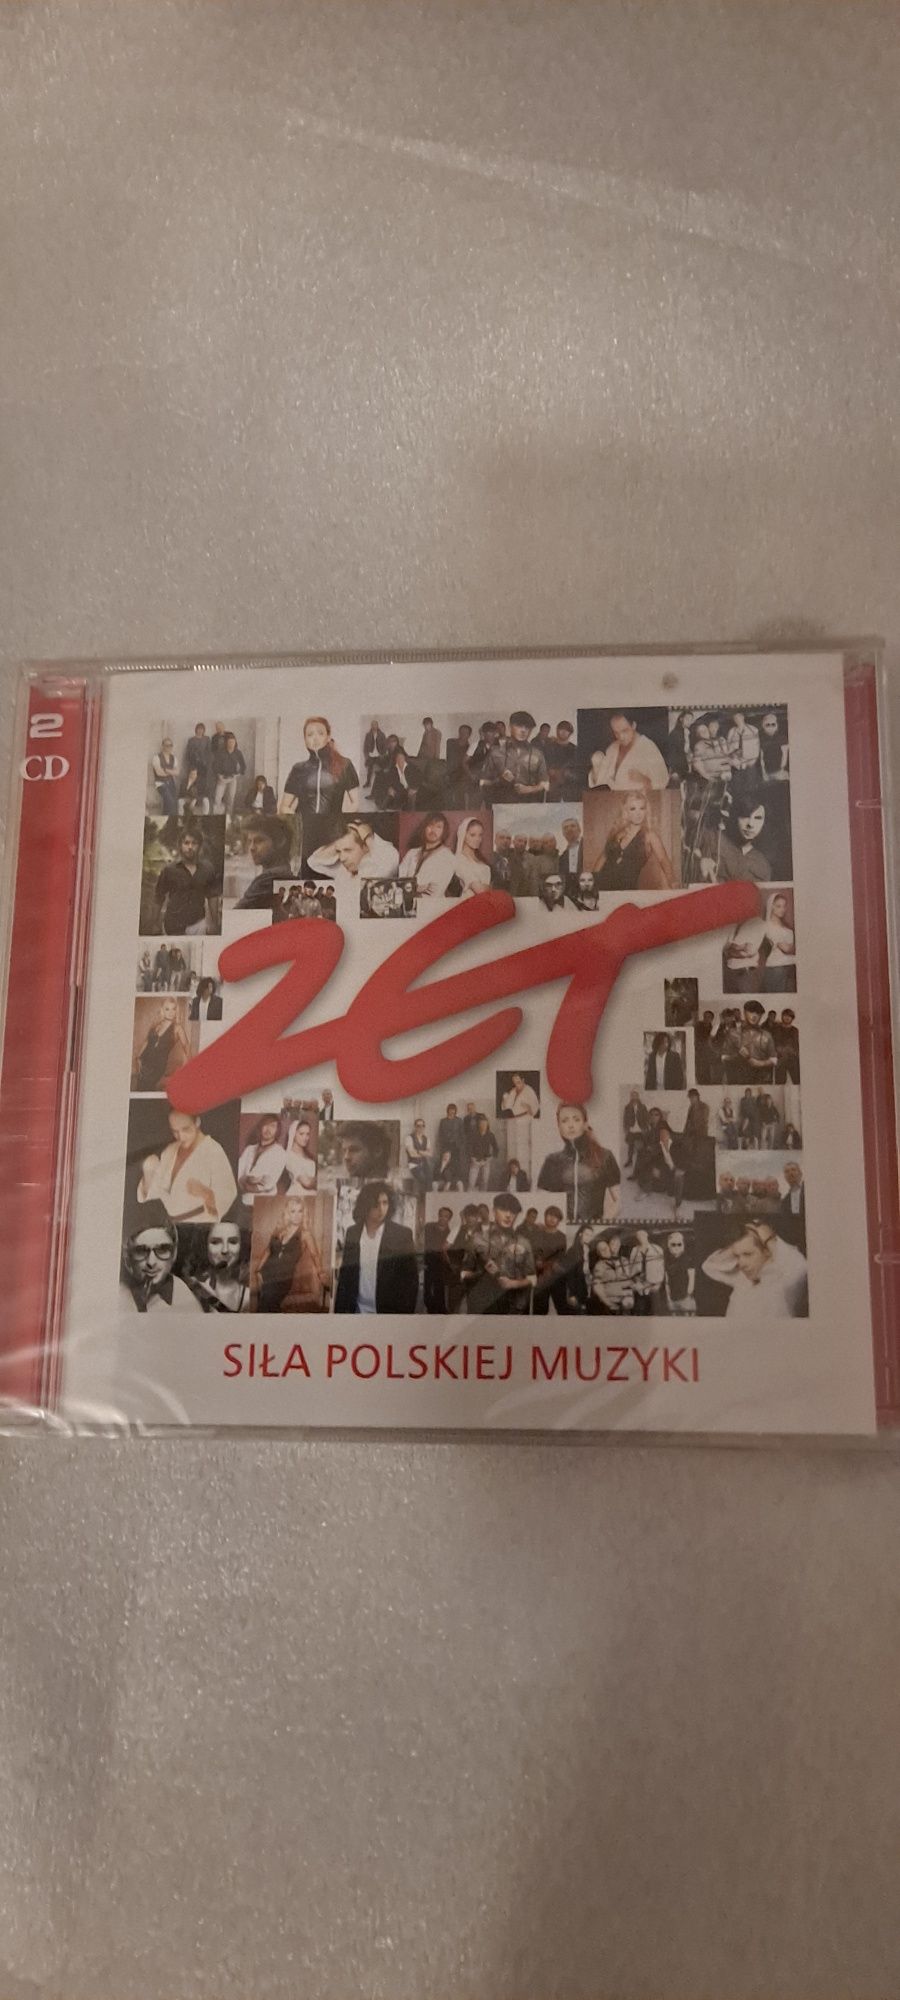 Płyta kompaktowa Siła polskiej muzyki Podwójny album